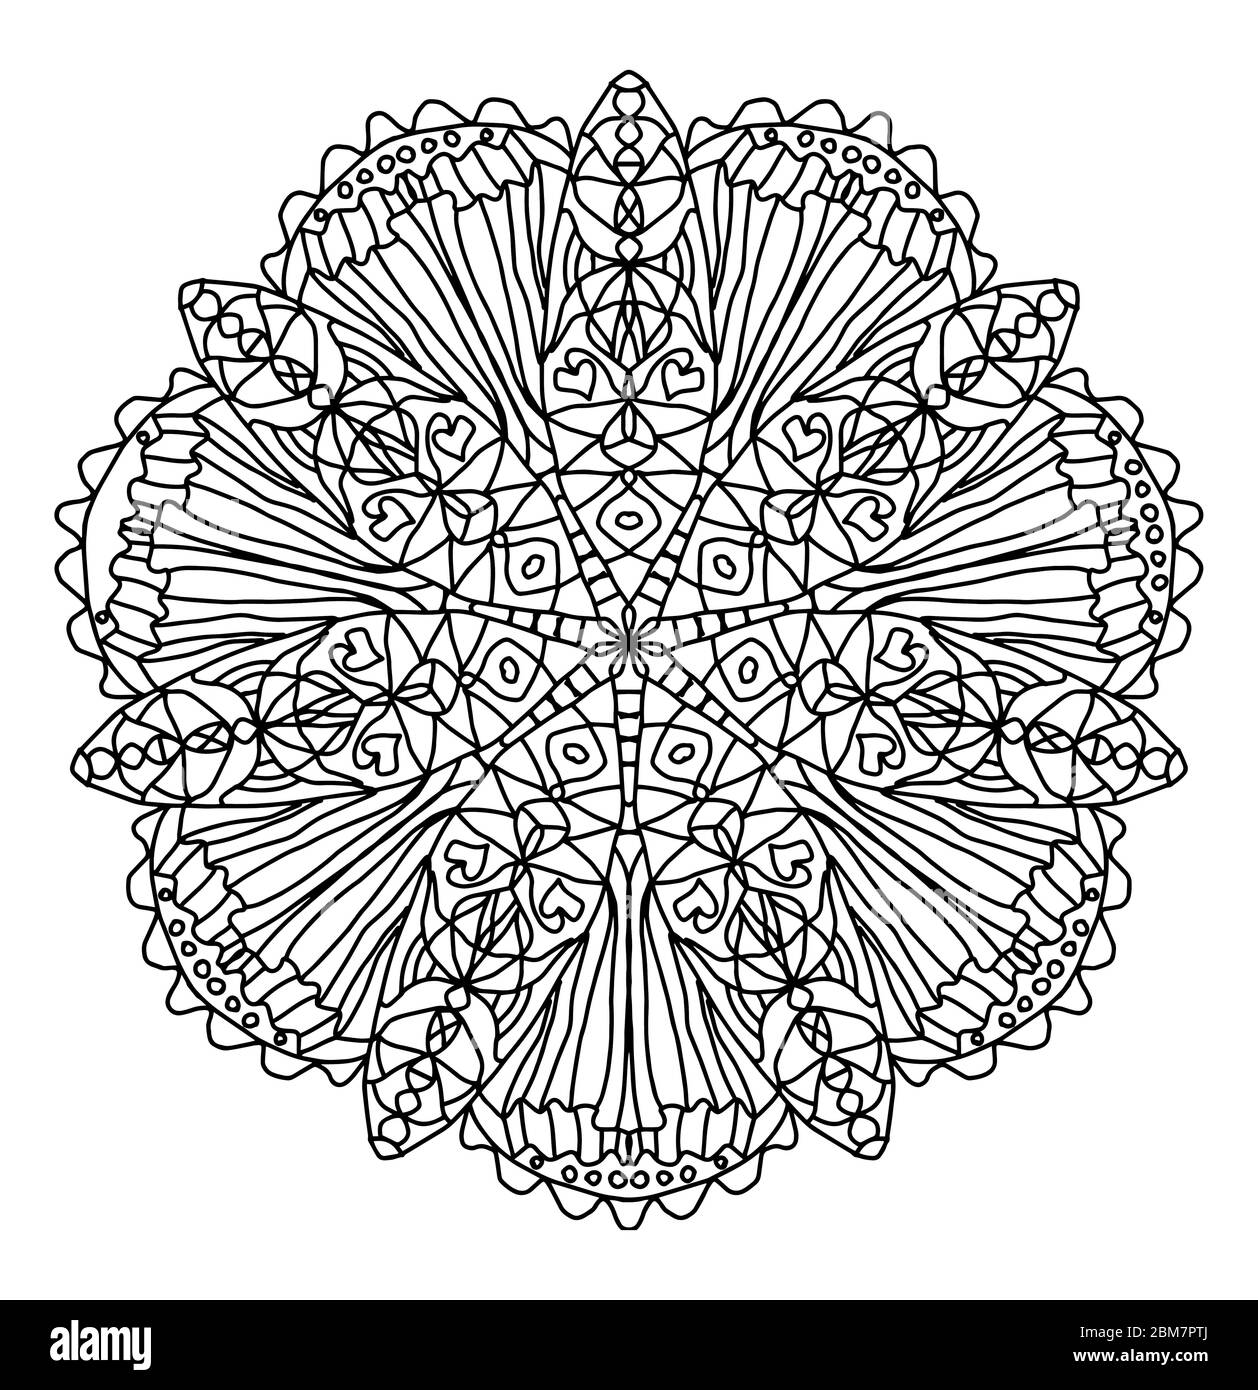 Pagina di colorazione Mandala. Fiore composto da 14 petali con un motivo simmetrico costituito da strisce verticali, cuori, cerchi su sfondo bianco Illustrazione Vettoriale